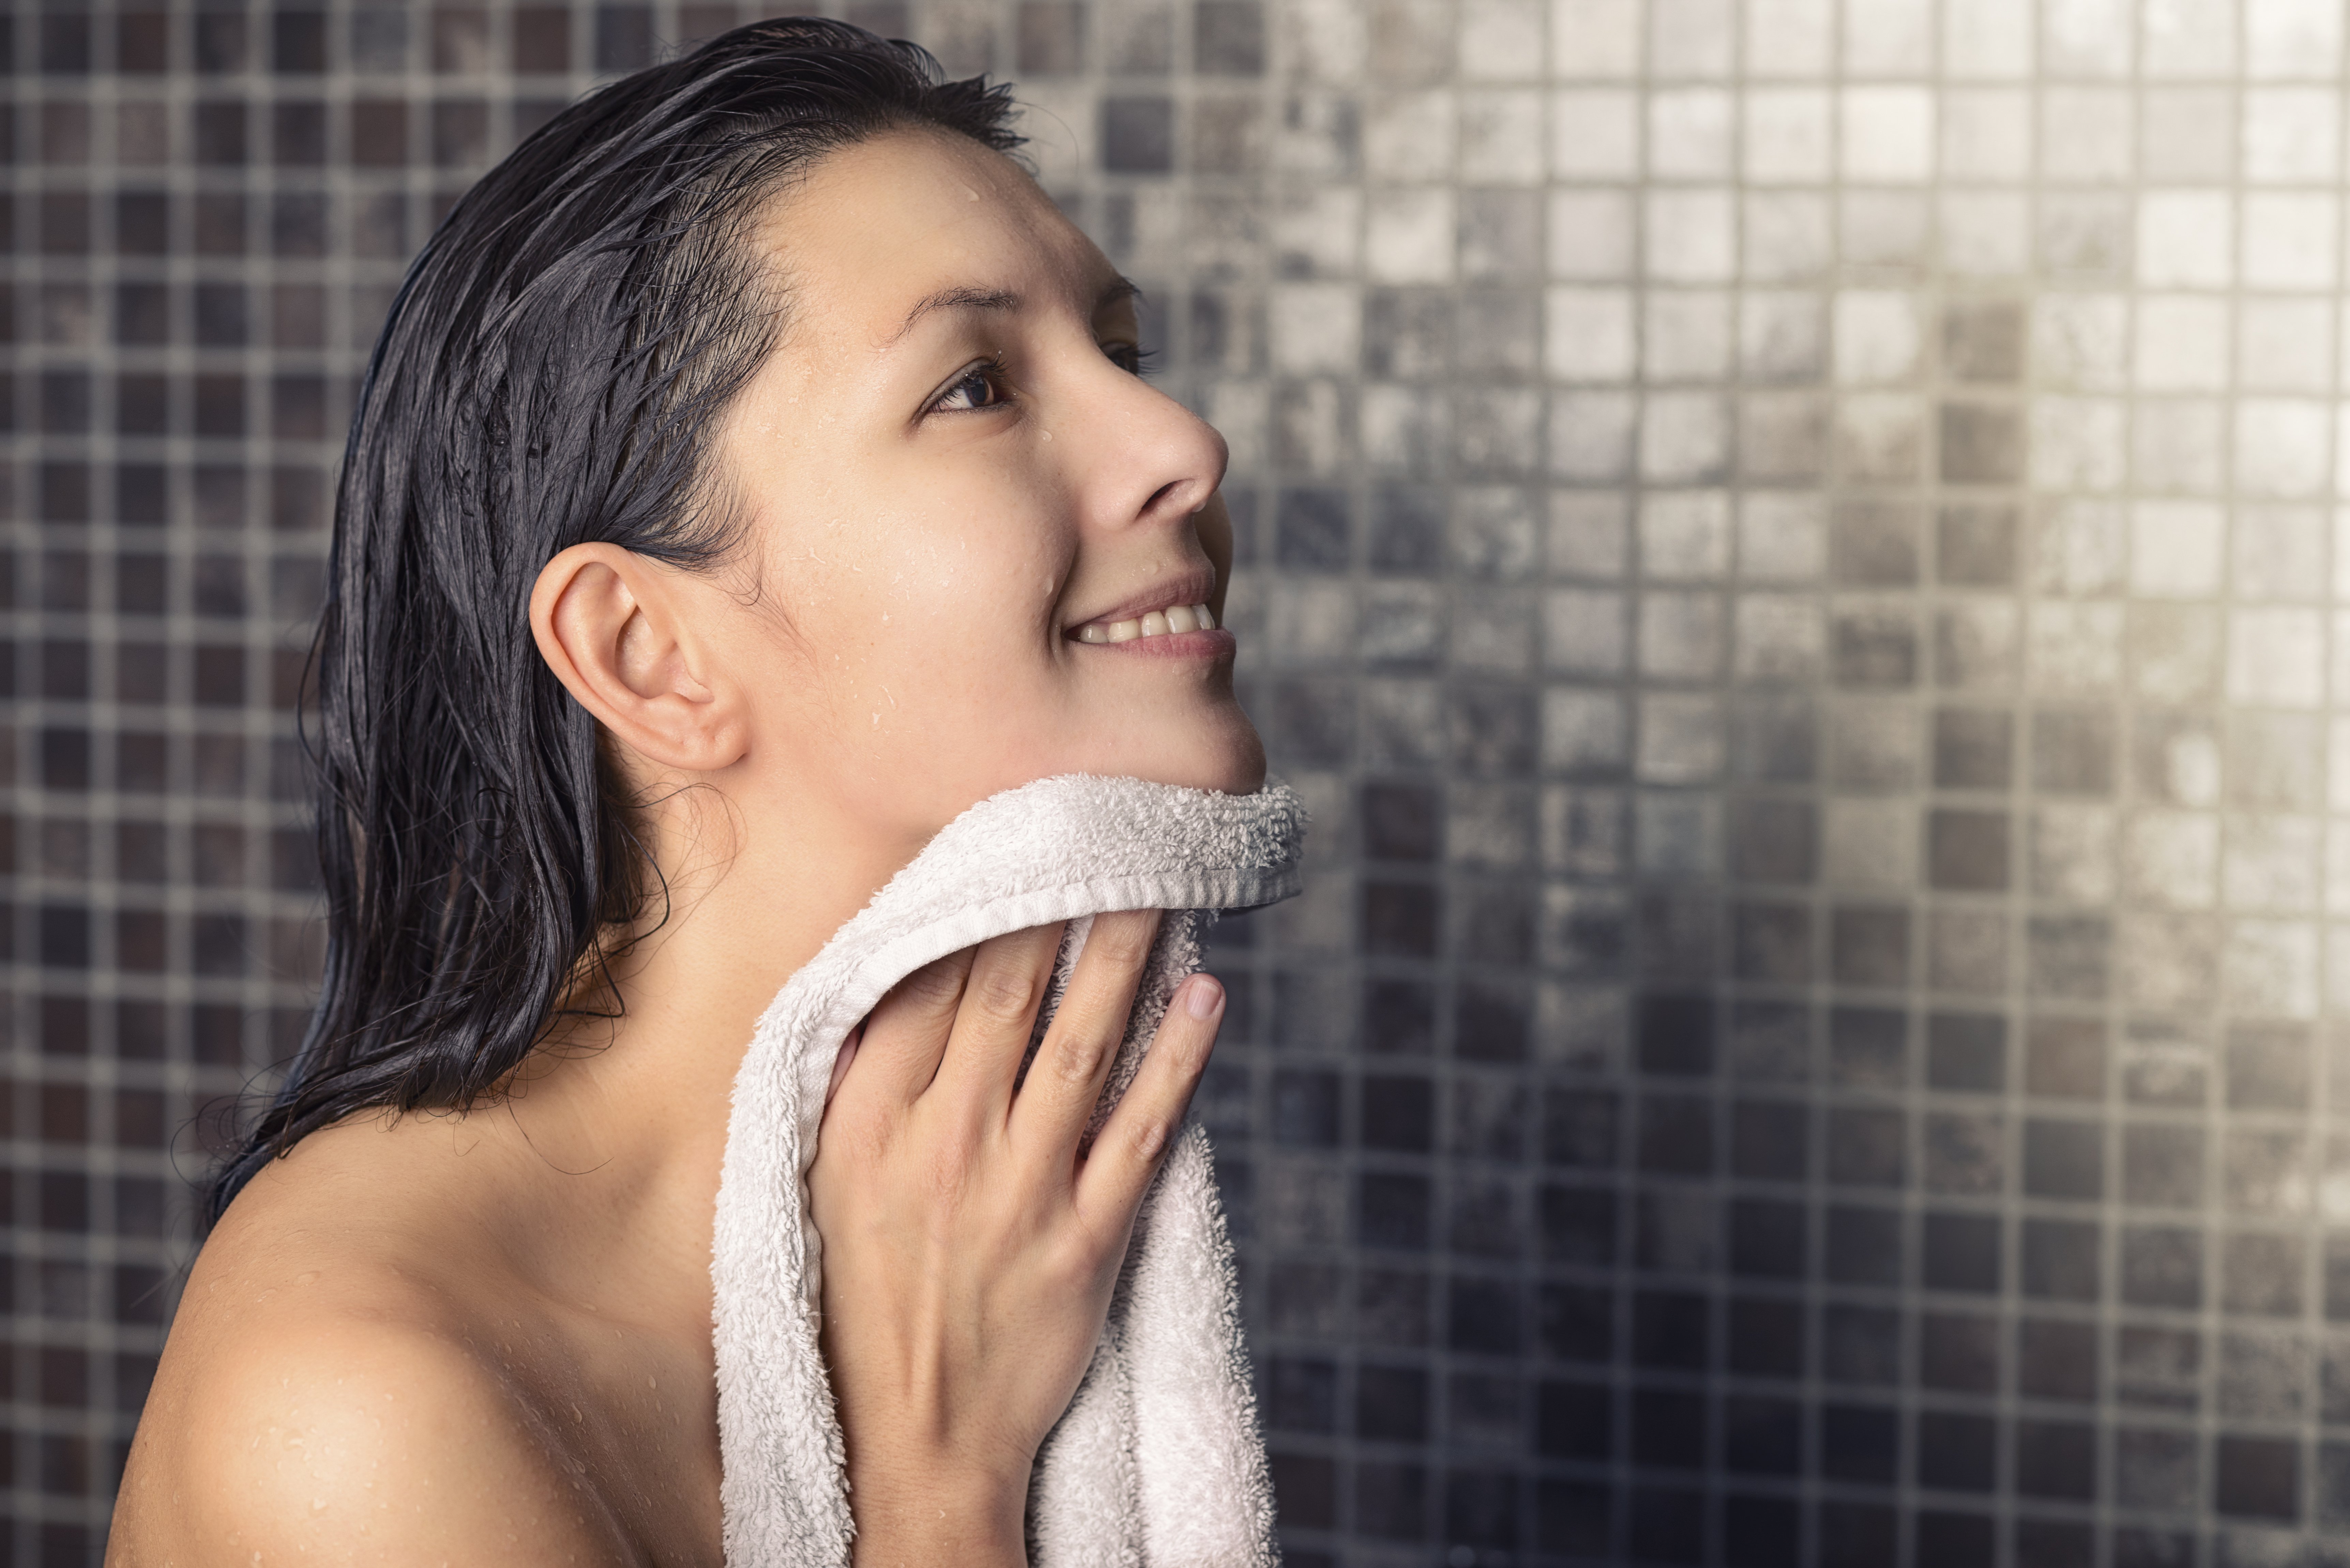 Une femme sous la douche avec une serviette. | Photo : Shutterstock